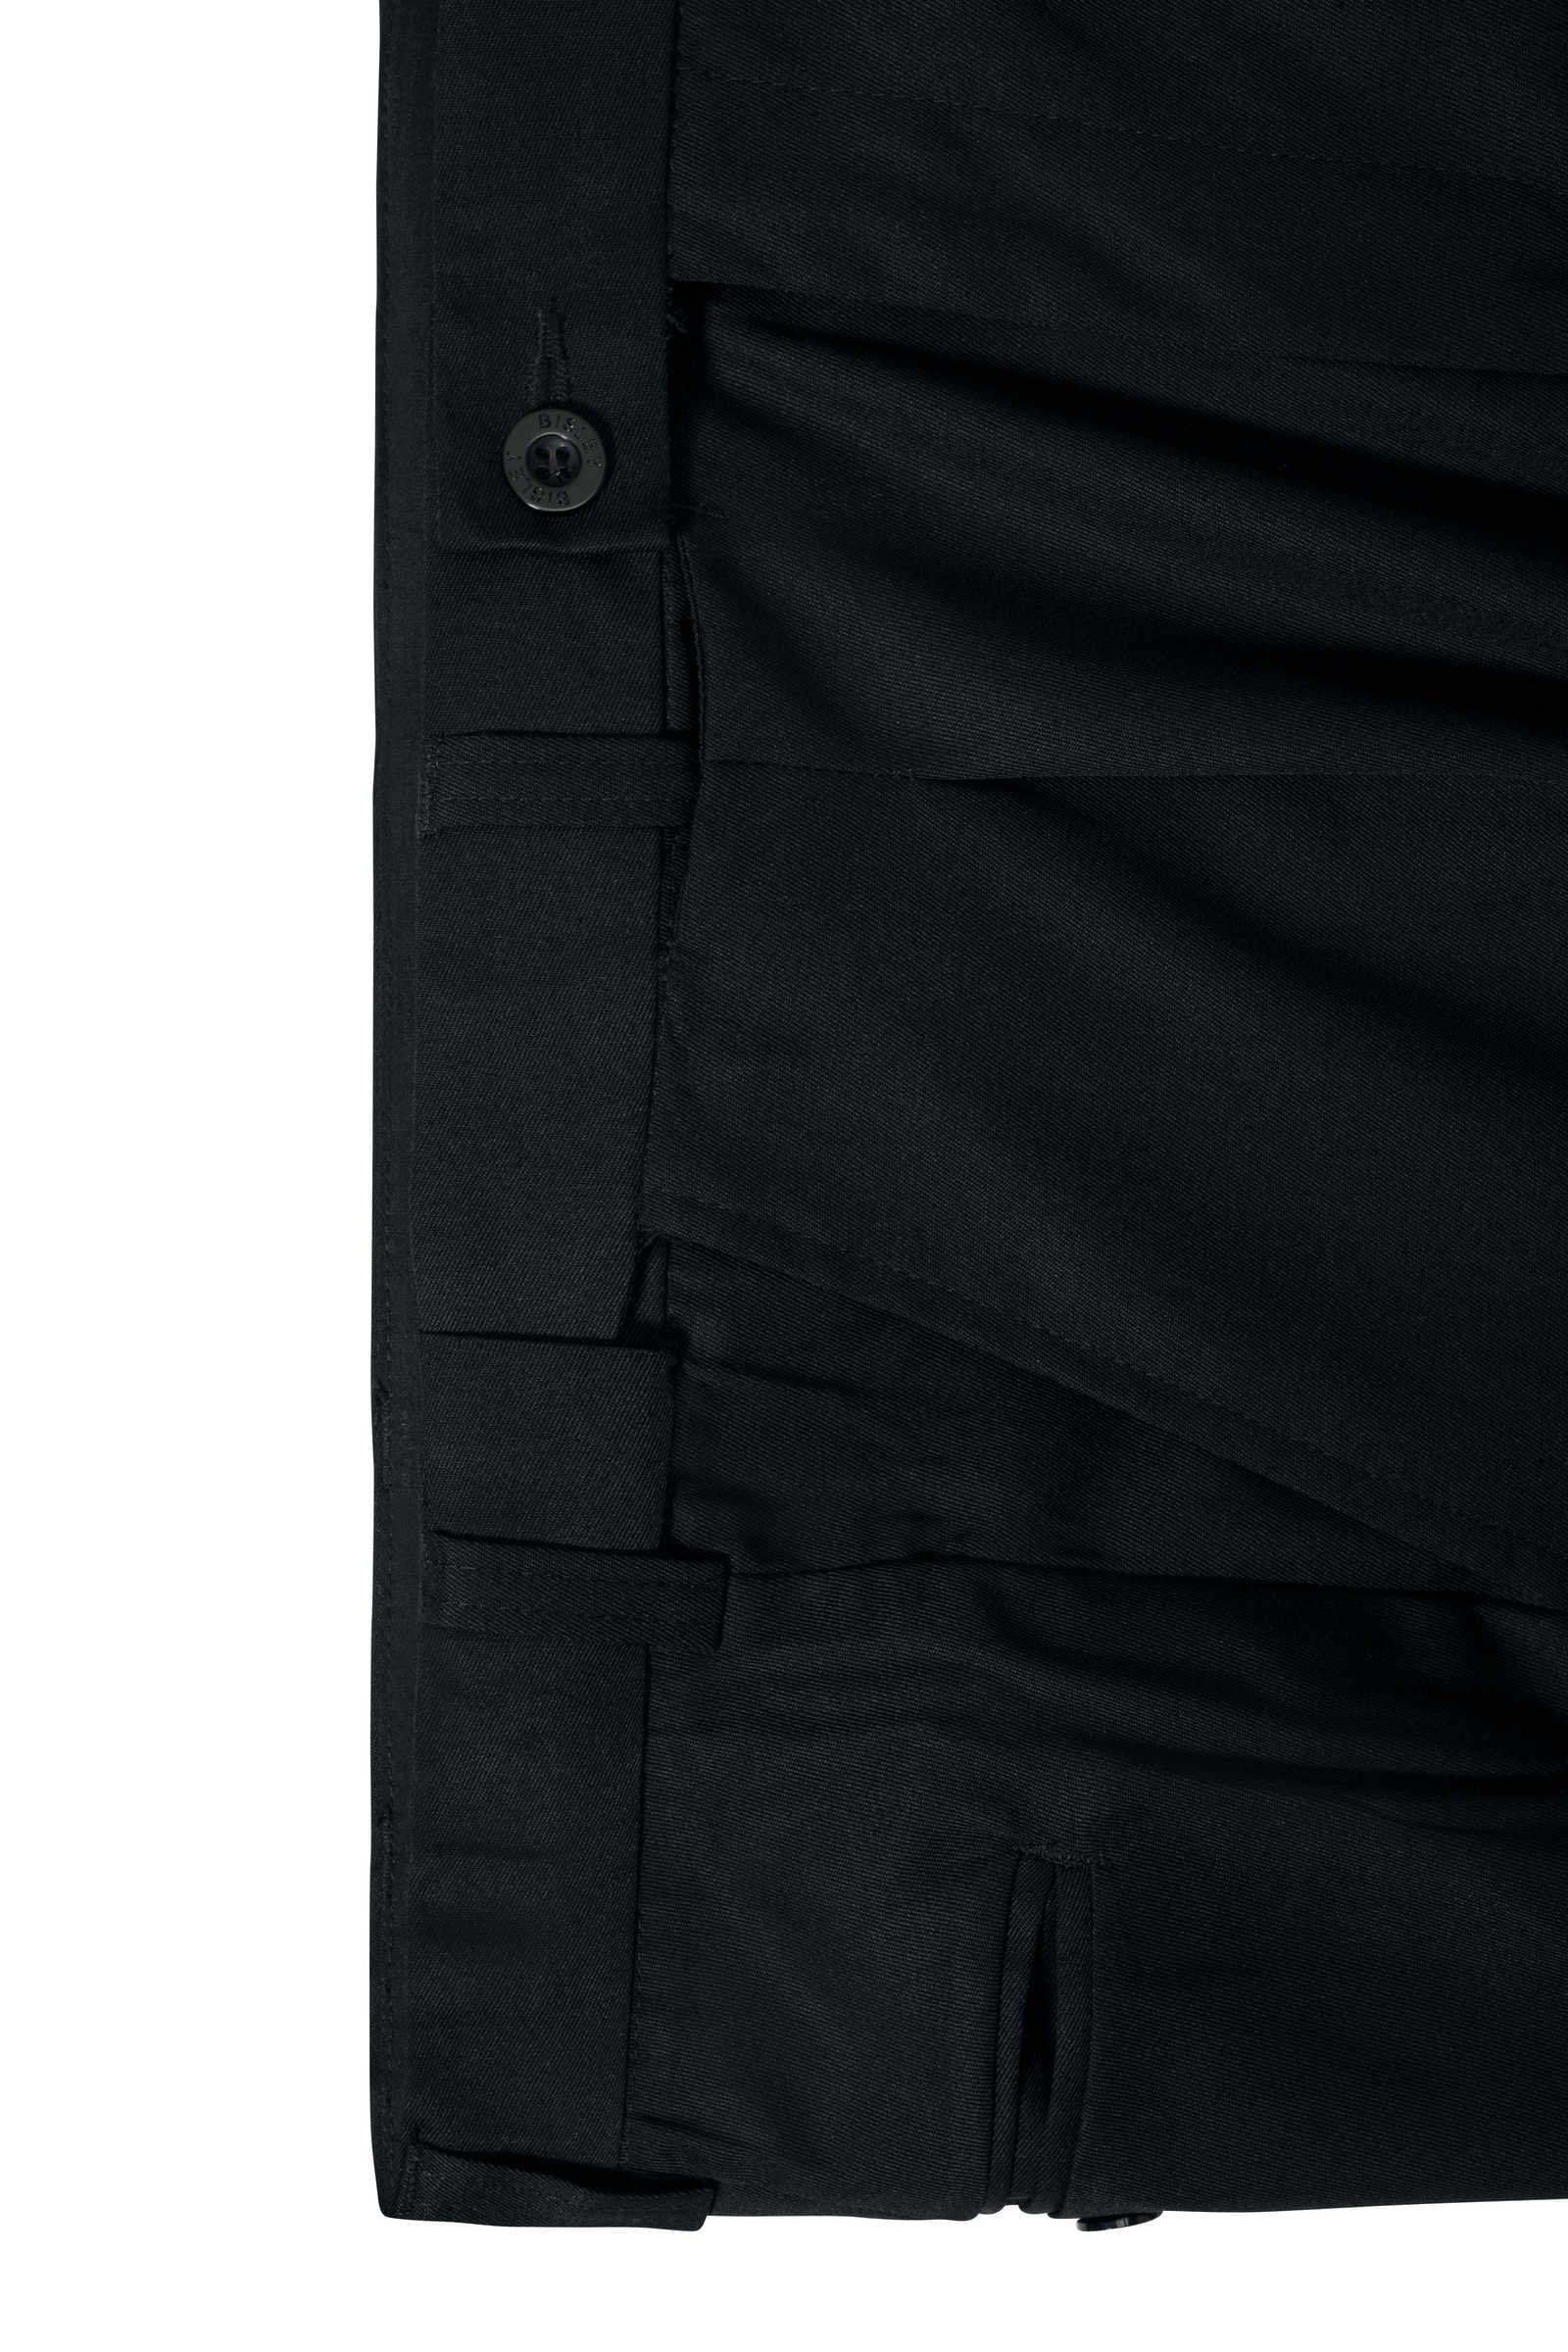 Bisley Permanent Press Trouser (BP6123D)